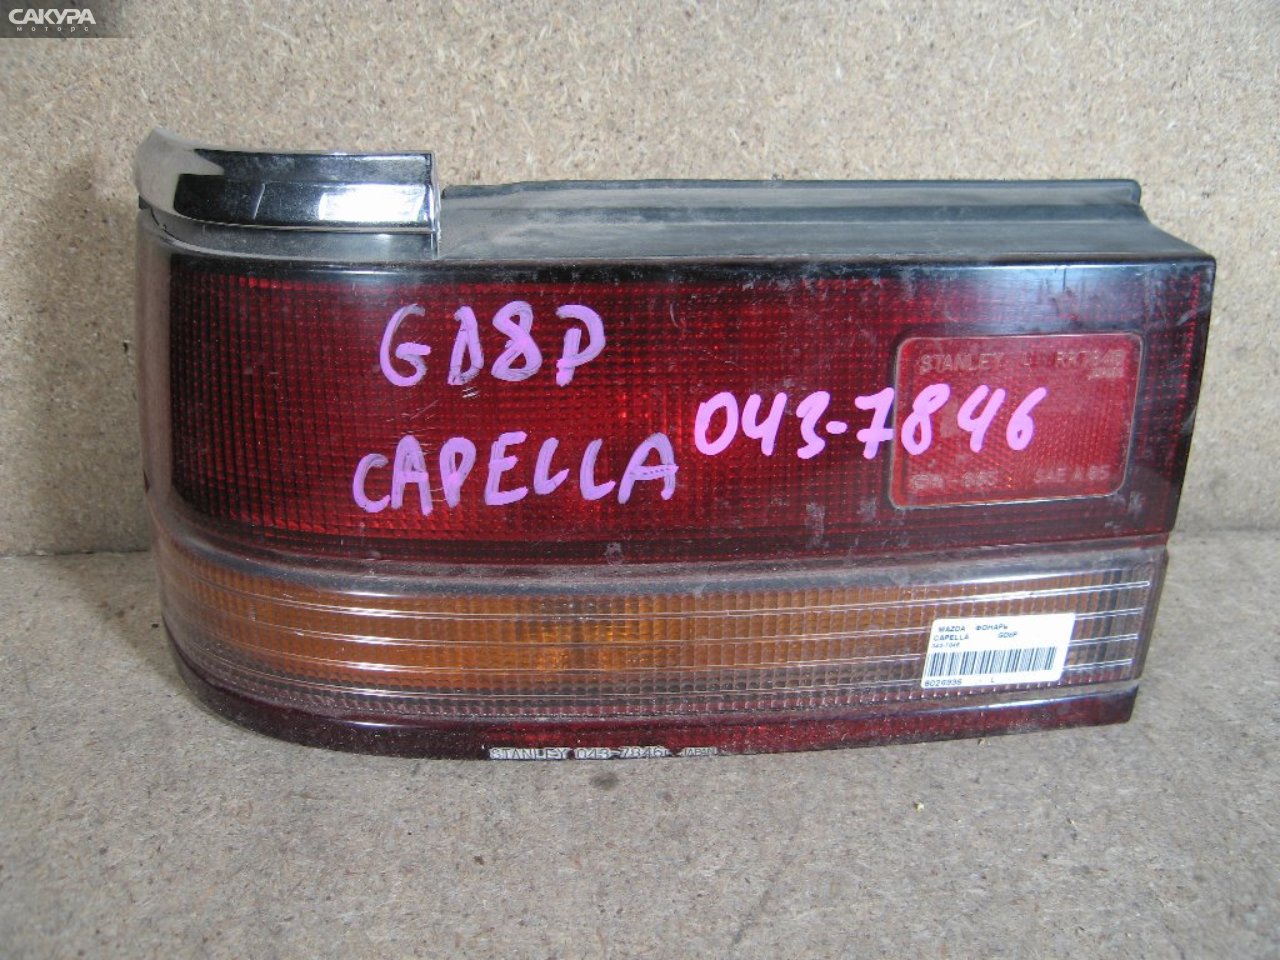 Фонарь стоп-сигнала левый Mazda Capella GD8P 043-7846: купить в Сакура Абакан.